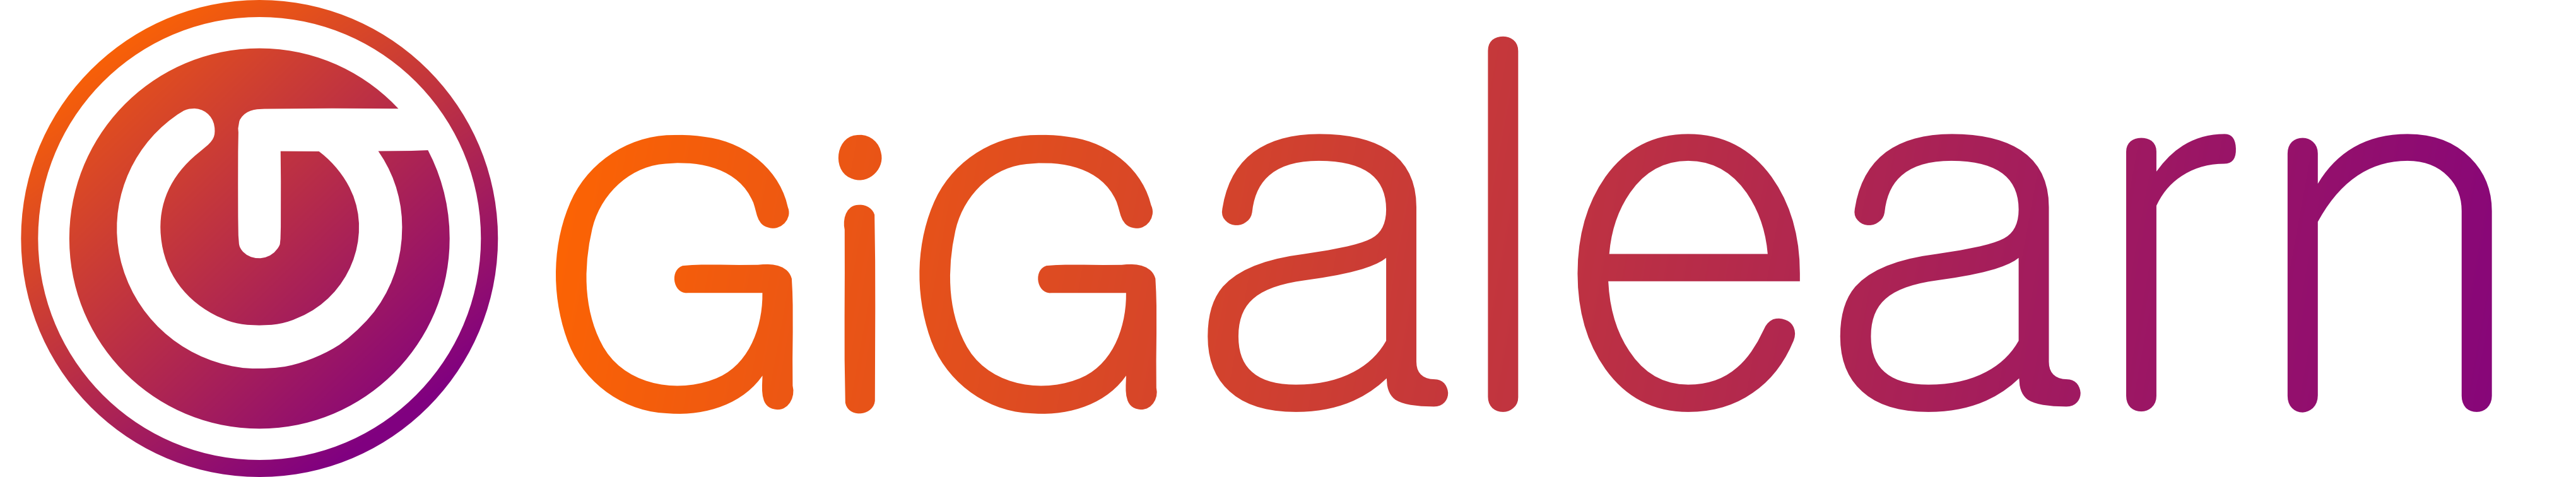 Gigalearn logo